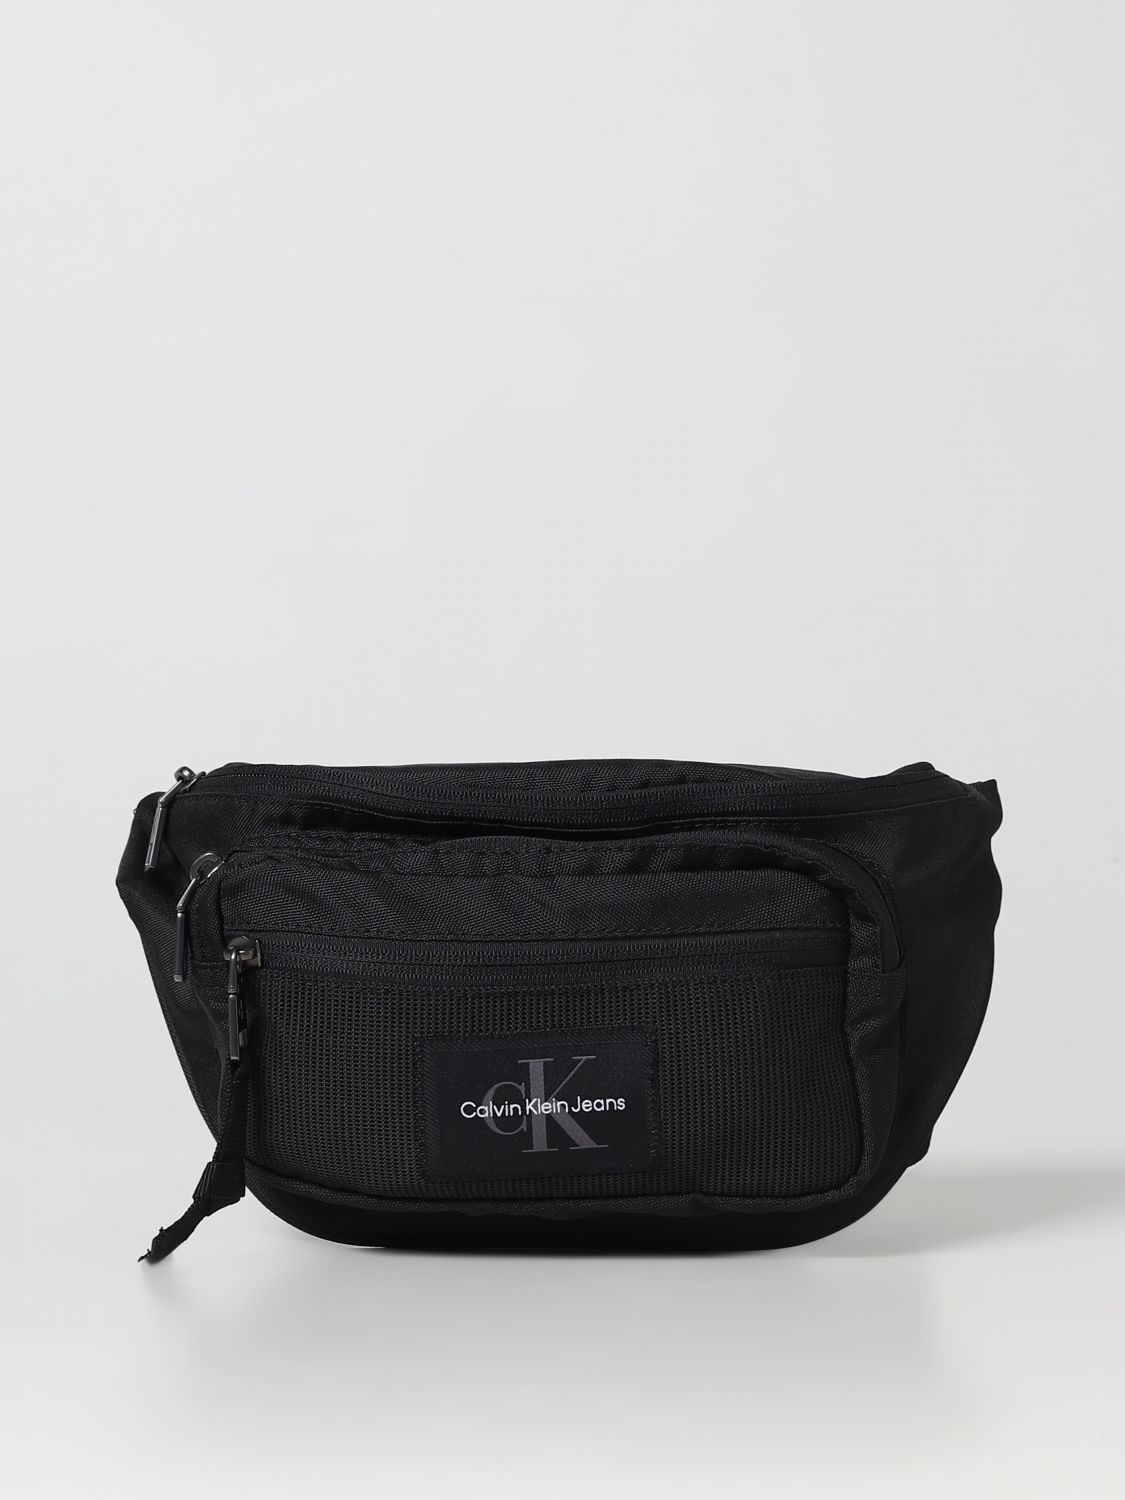 CALVIN KLEIN JEANS: belt bag for man - Black | Calvin Klein Jeans belt bag  K50K510090 online on 